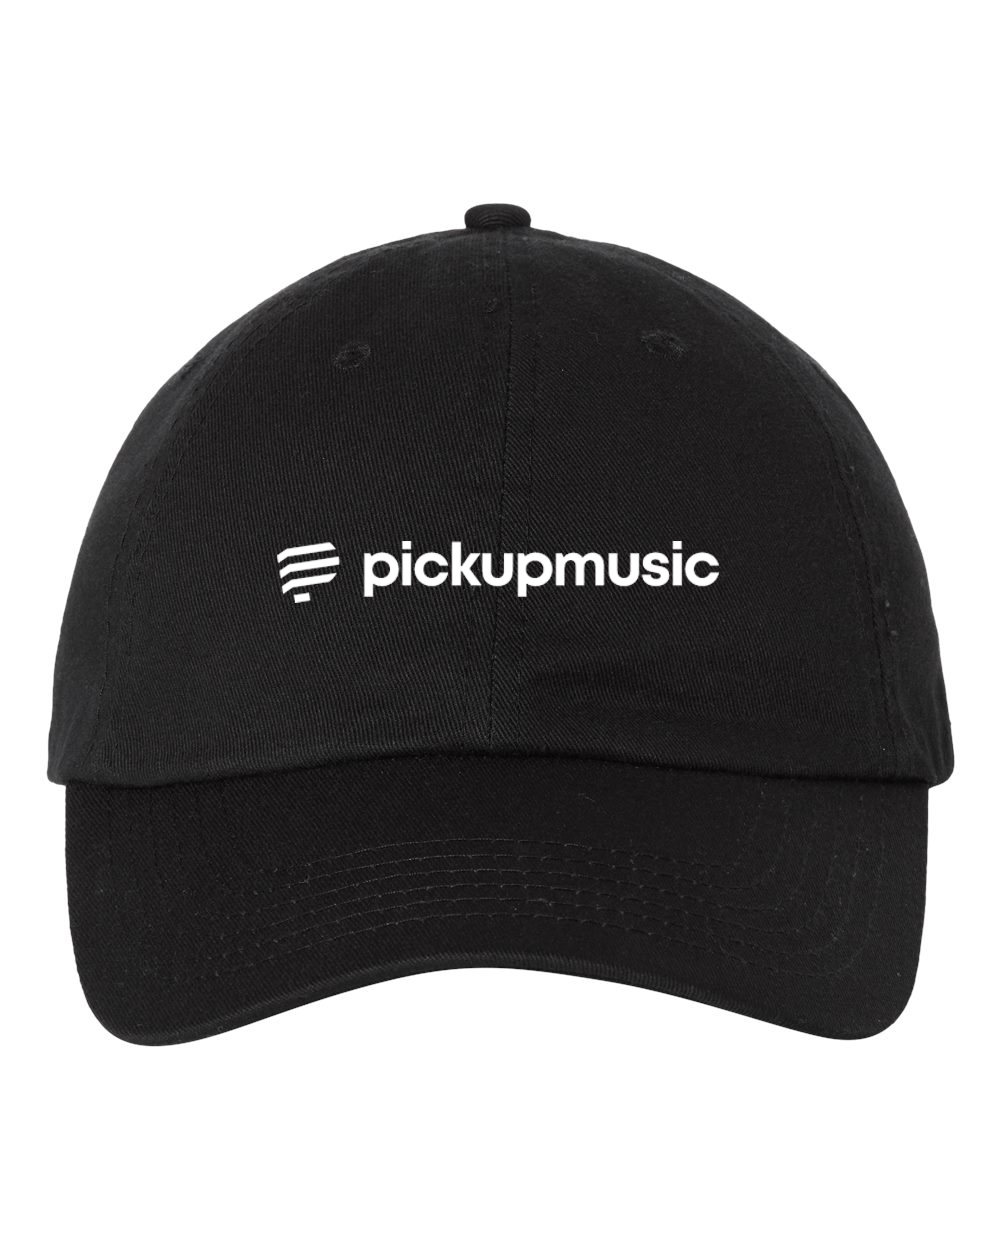 Pickup Music Dad Hat